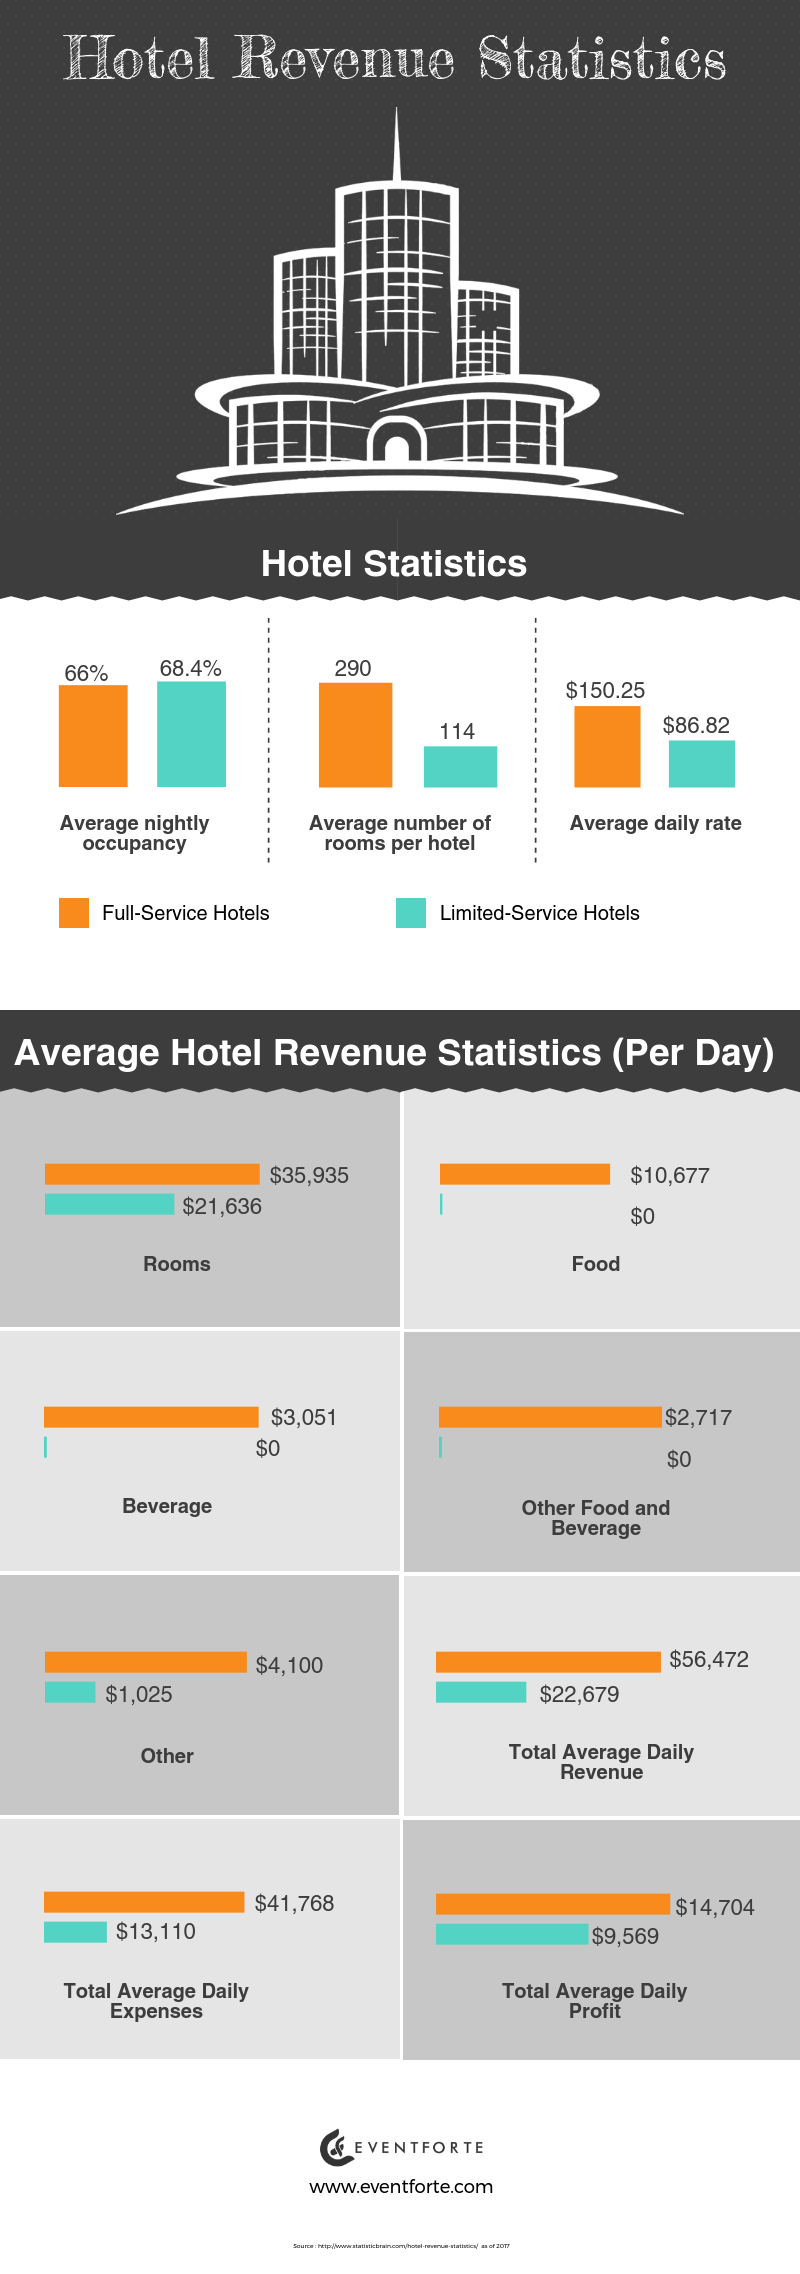 Hotel Revenue Management Statistics